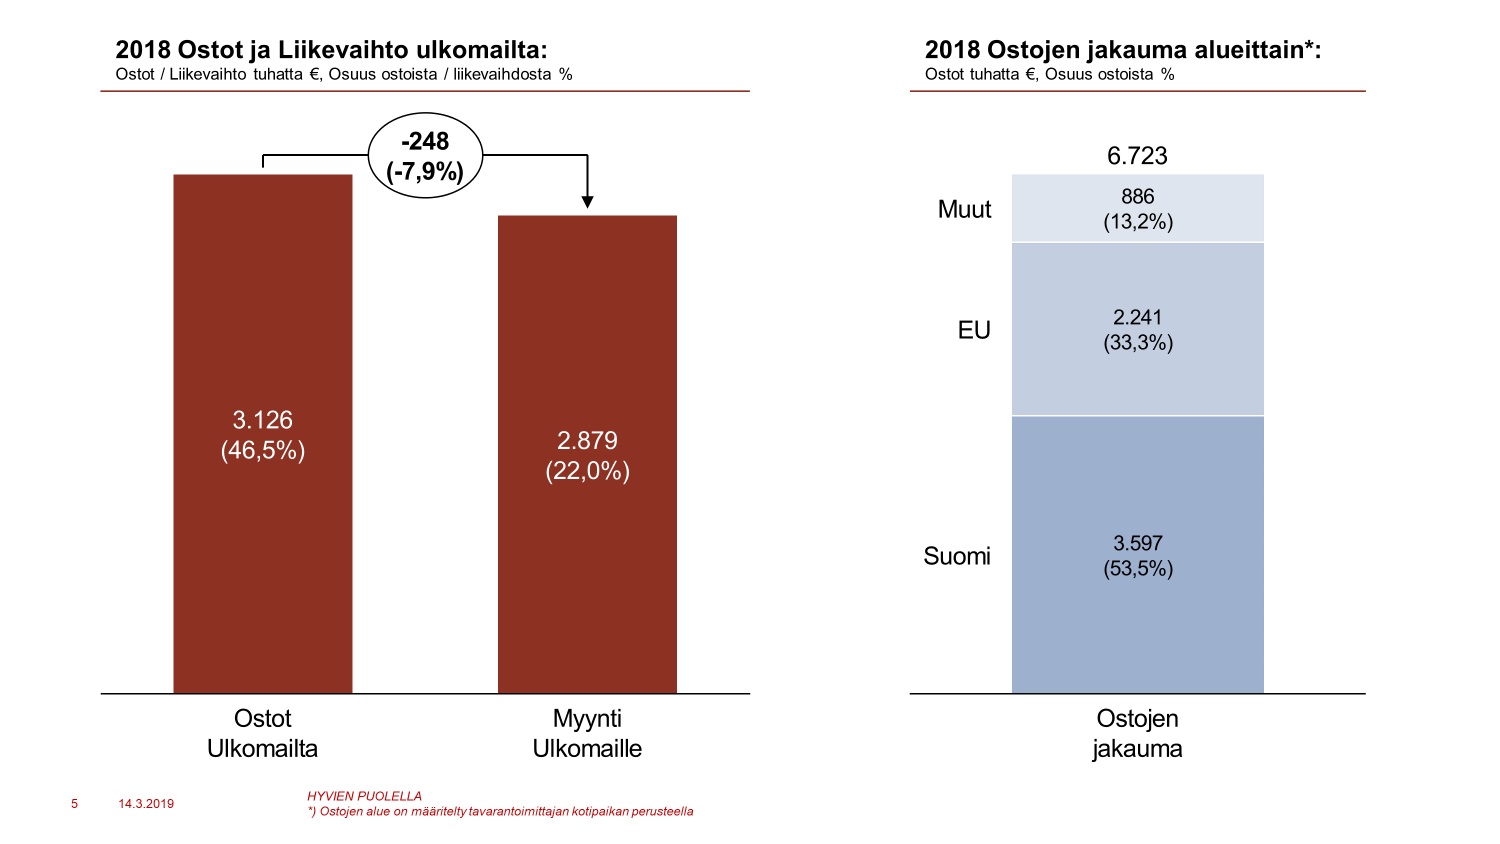 Pylväsdiagrammi: Ostot ja liikevaihto ulkomailta sekä ostojen jakauma alueittain. Ostot 3,126 t € (46,5%), myynti 2,879 t € (22%). Ostojen jakauma alueittain: Suomi 3,597 t € (53,5%), EU 2,241 t € (33,3%), muut 886 t € (13,2%).